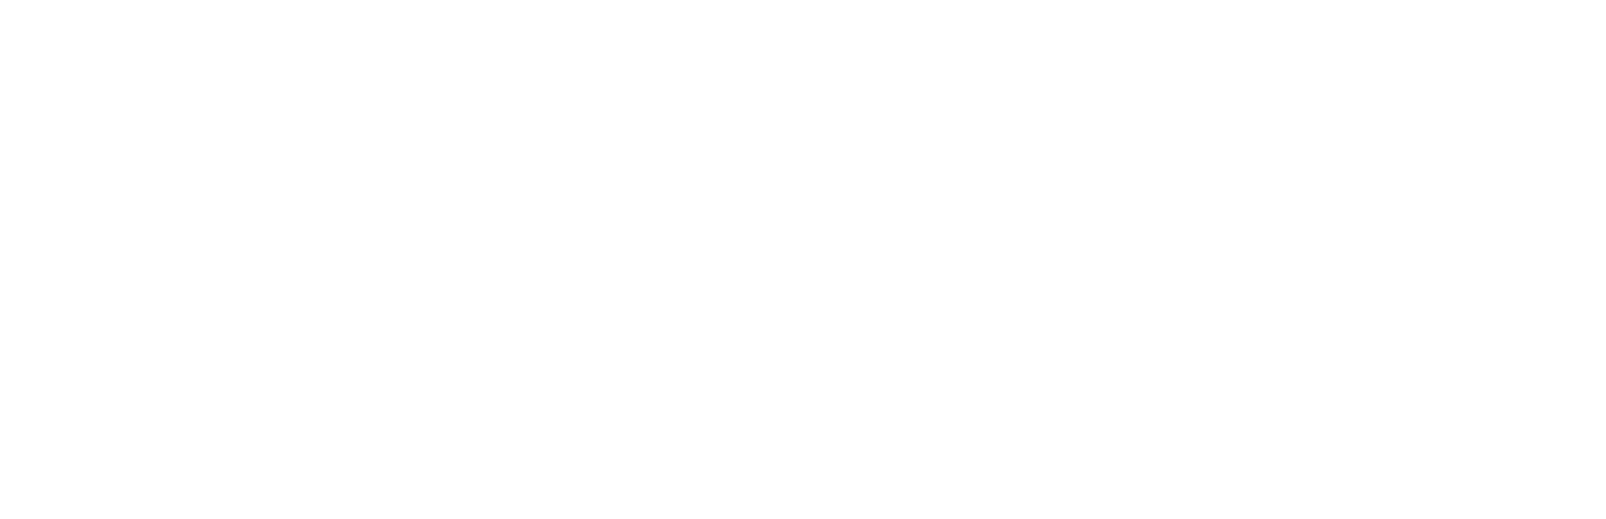 Zebra Technologies Logo groß für dunkle Hintergründe (transparentes PNG)